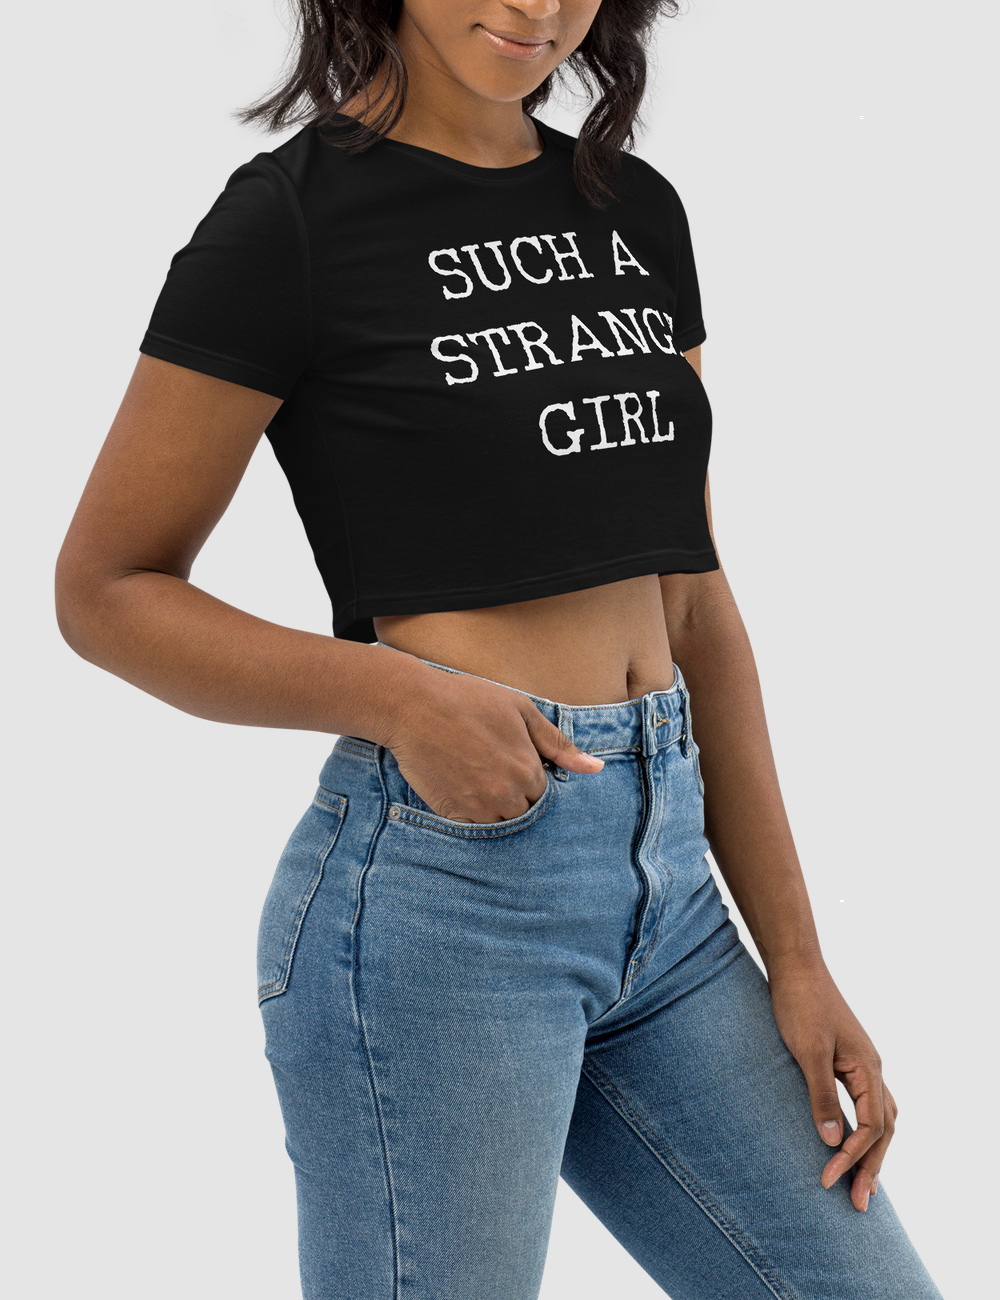 Such A Strange Girl | Women's Crop Top T-Shirt OniTakai